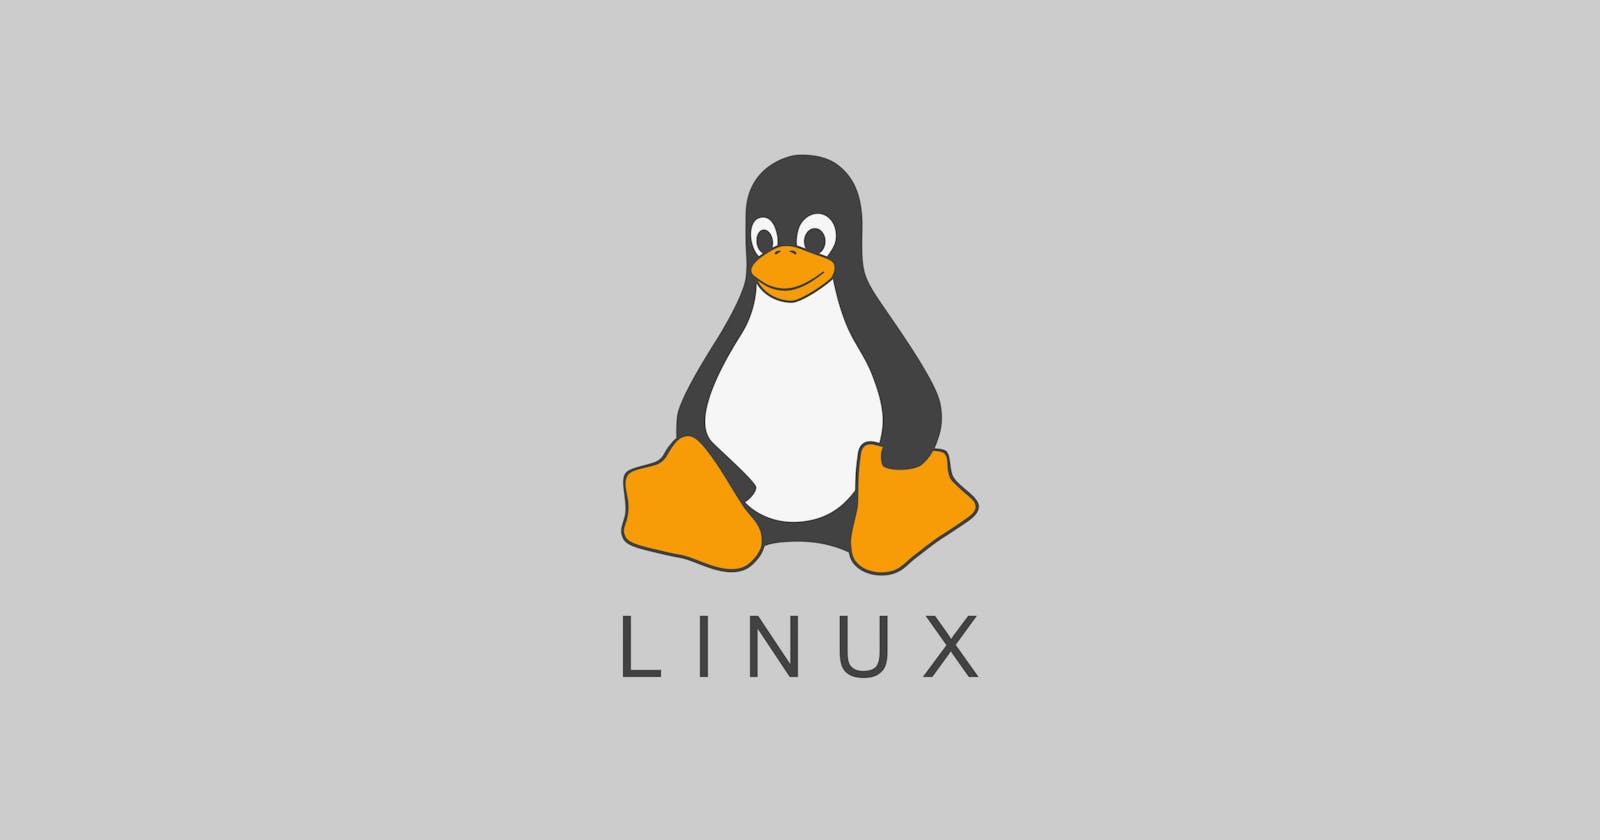 Basic Linux Commands Part 2